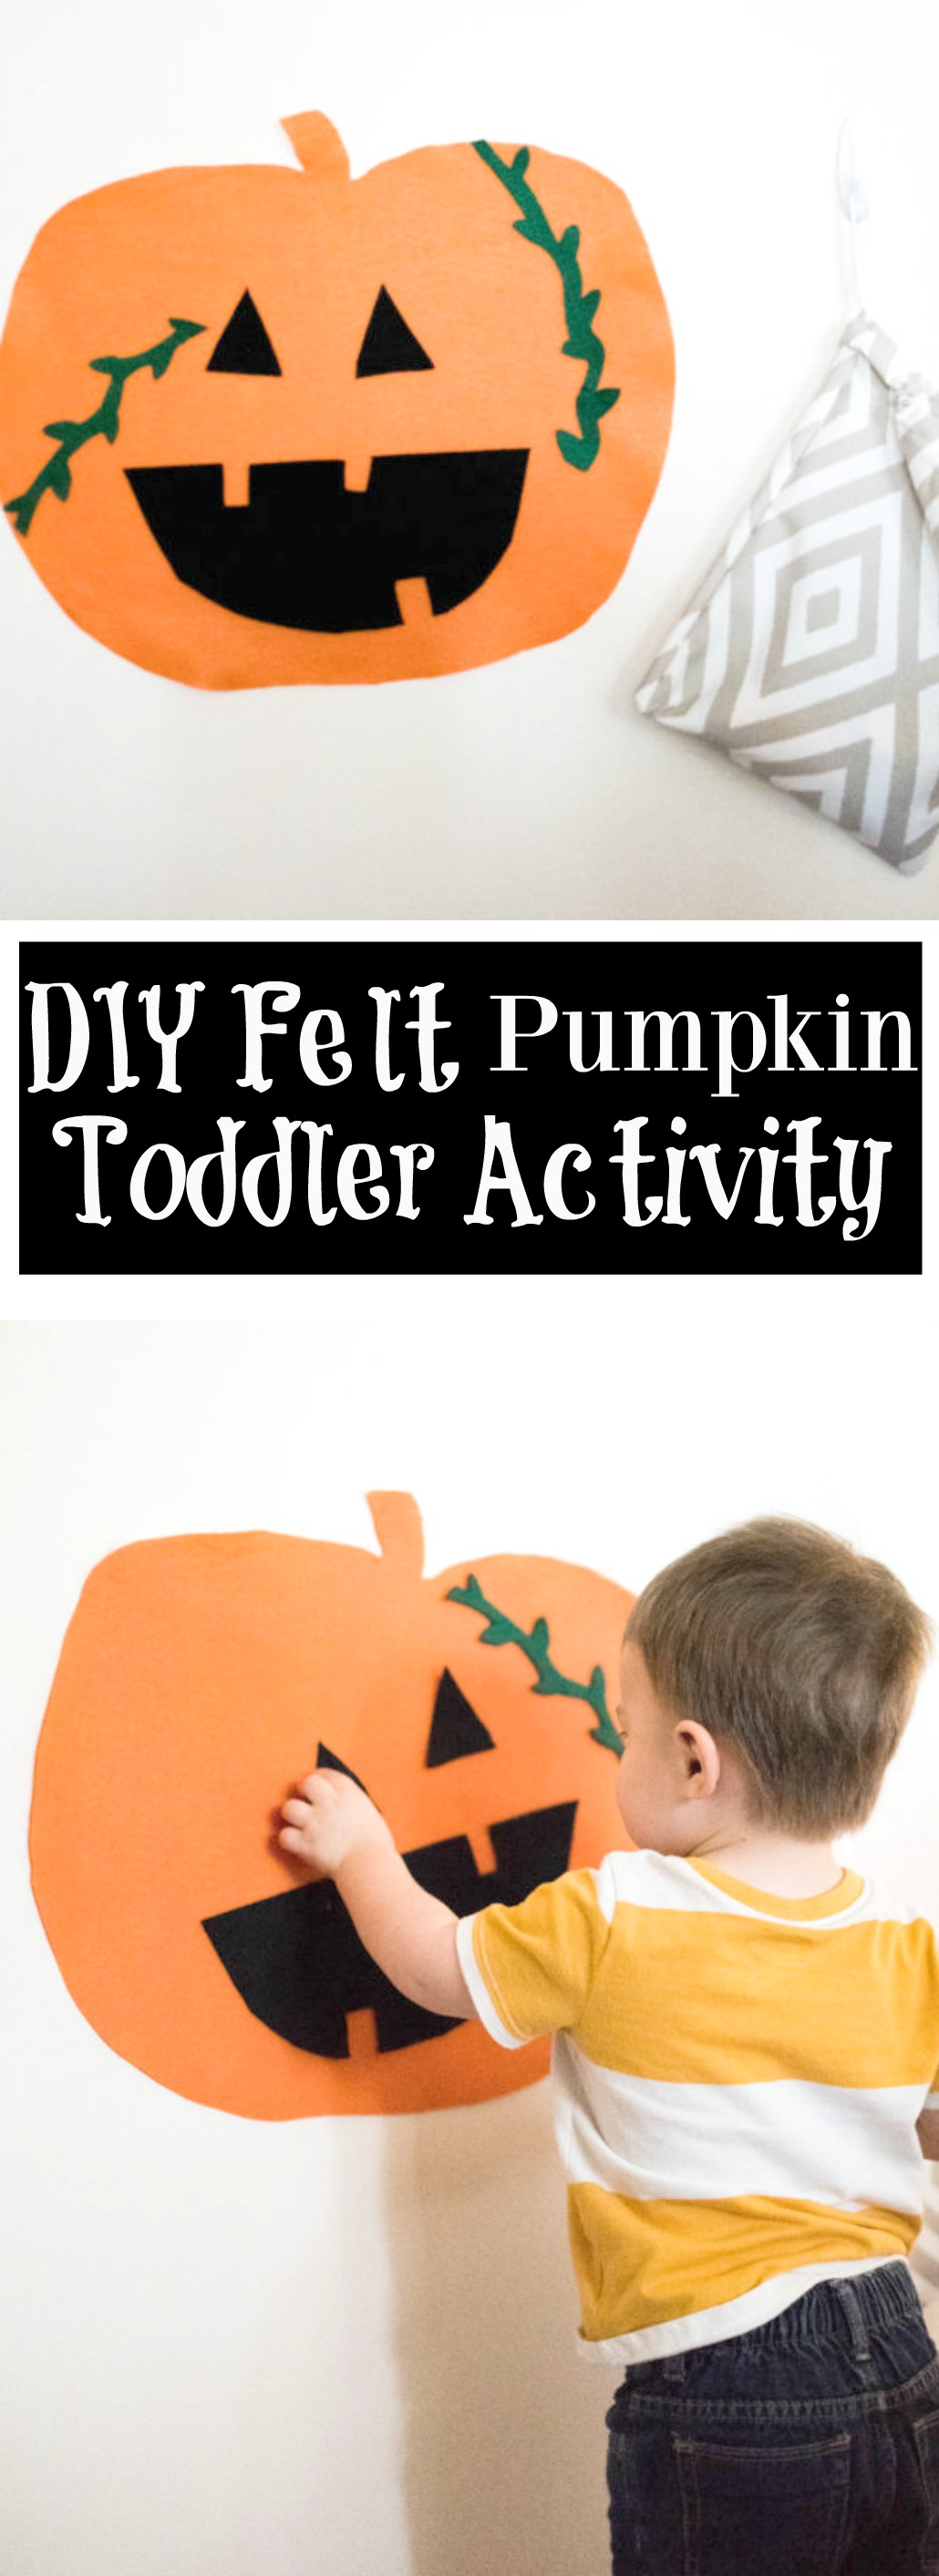 DIY Felt Pumpkin Toddler Activity